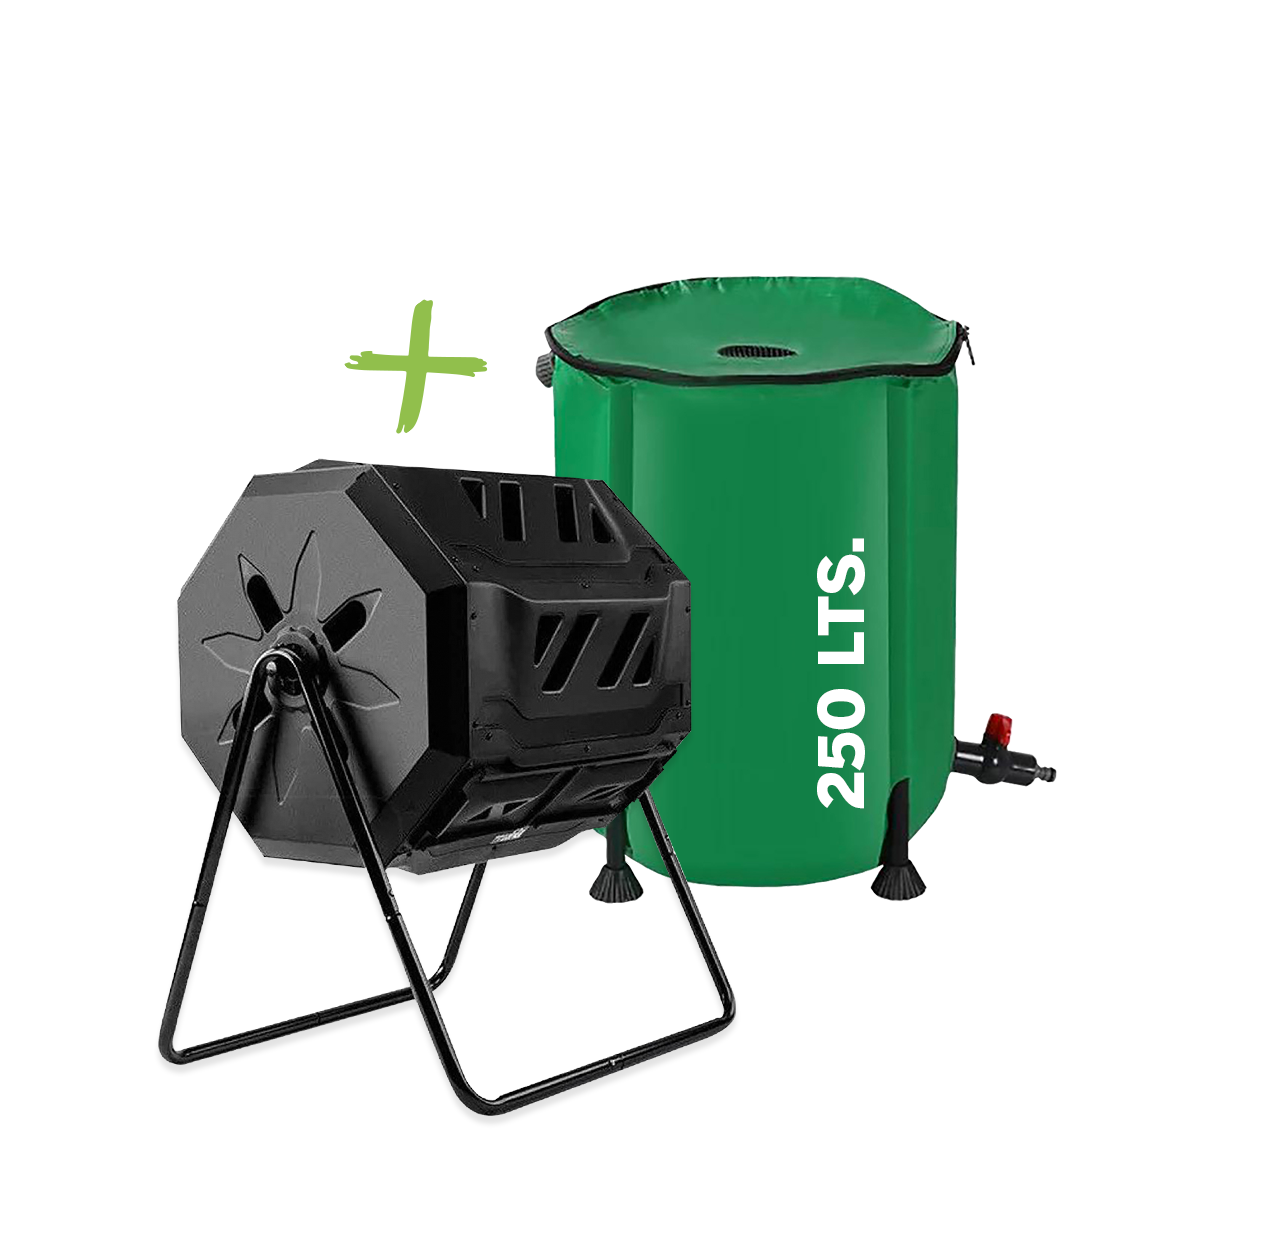 ⚡ Contenedor de Agua Flexible 250 lts + Compostina ⚡